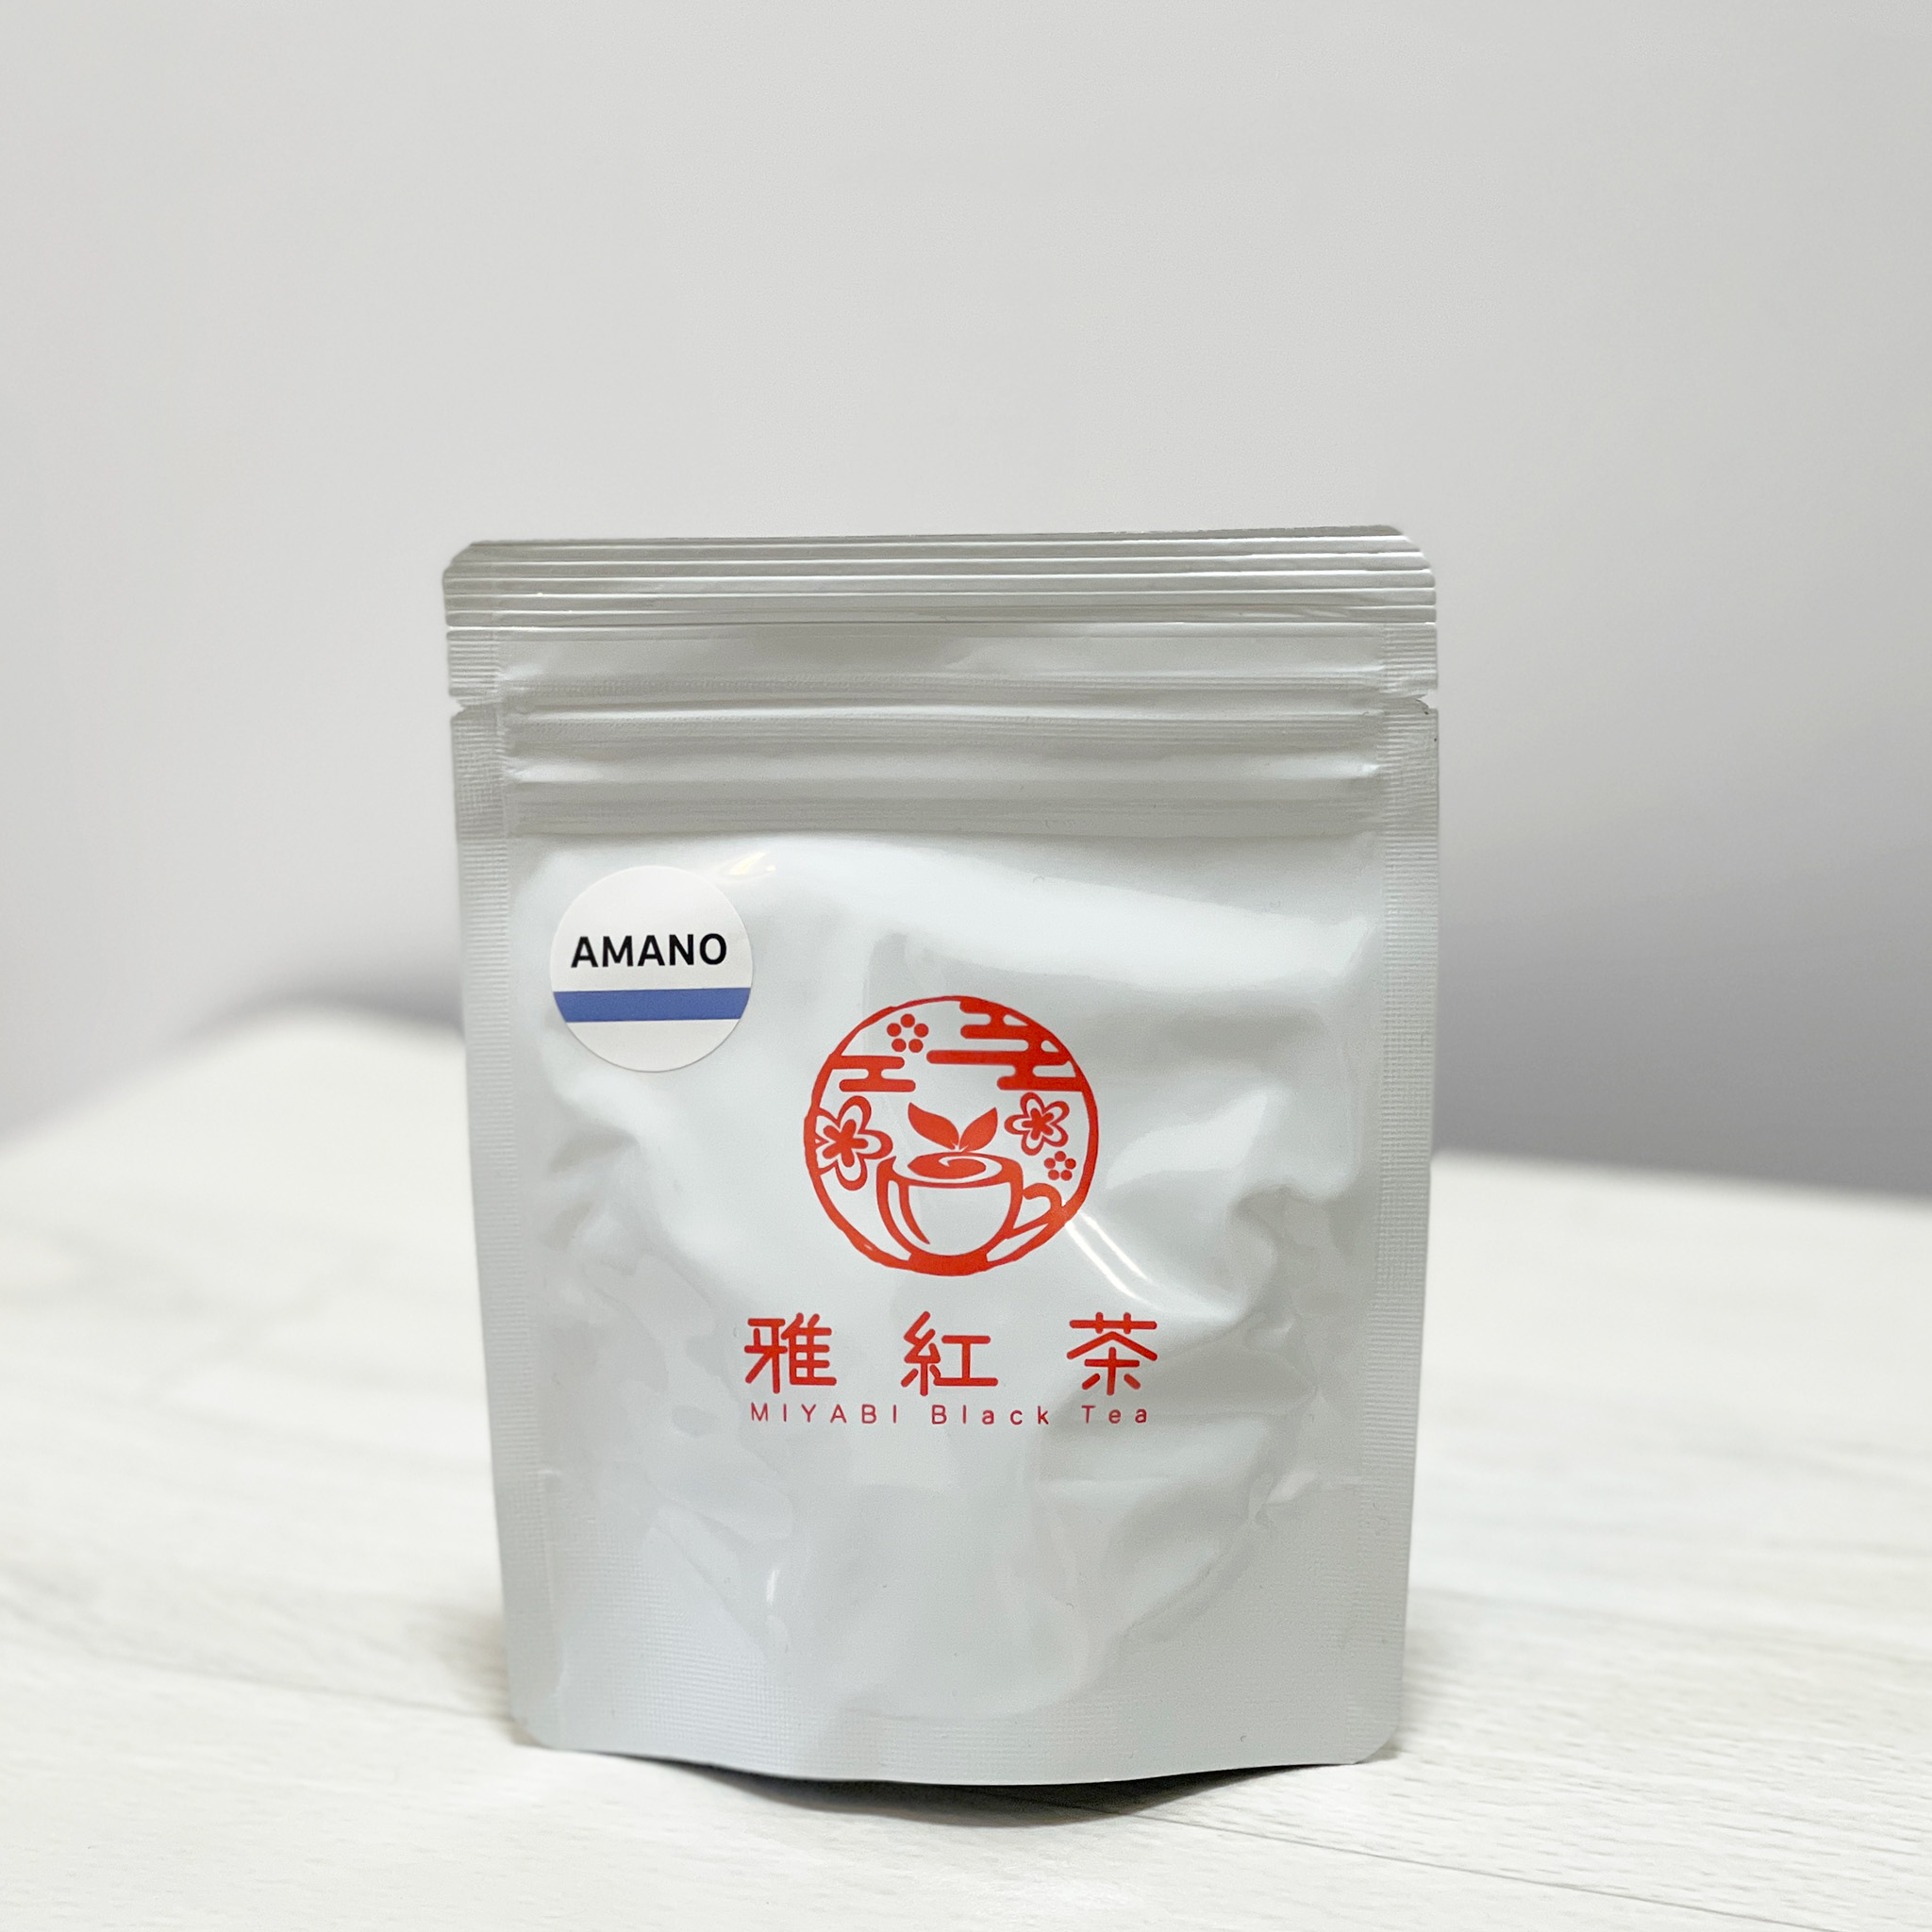 送料無料 日本で栽培加工された紅茶 2021新入荷 和紅茶 雅紅茶 AMANO 大幅にプライスダウン ティーバッグ